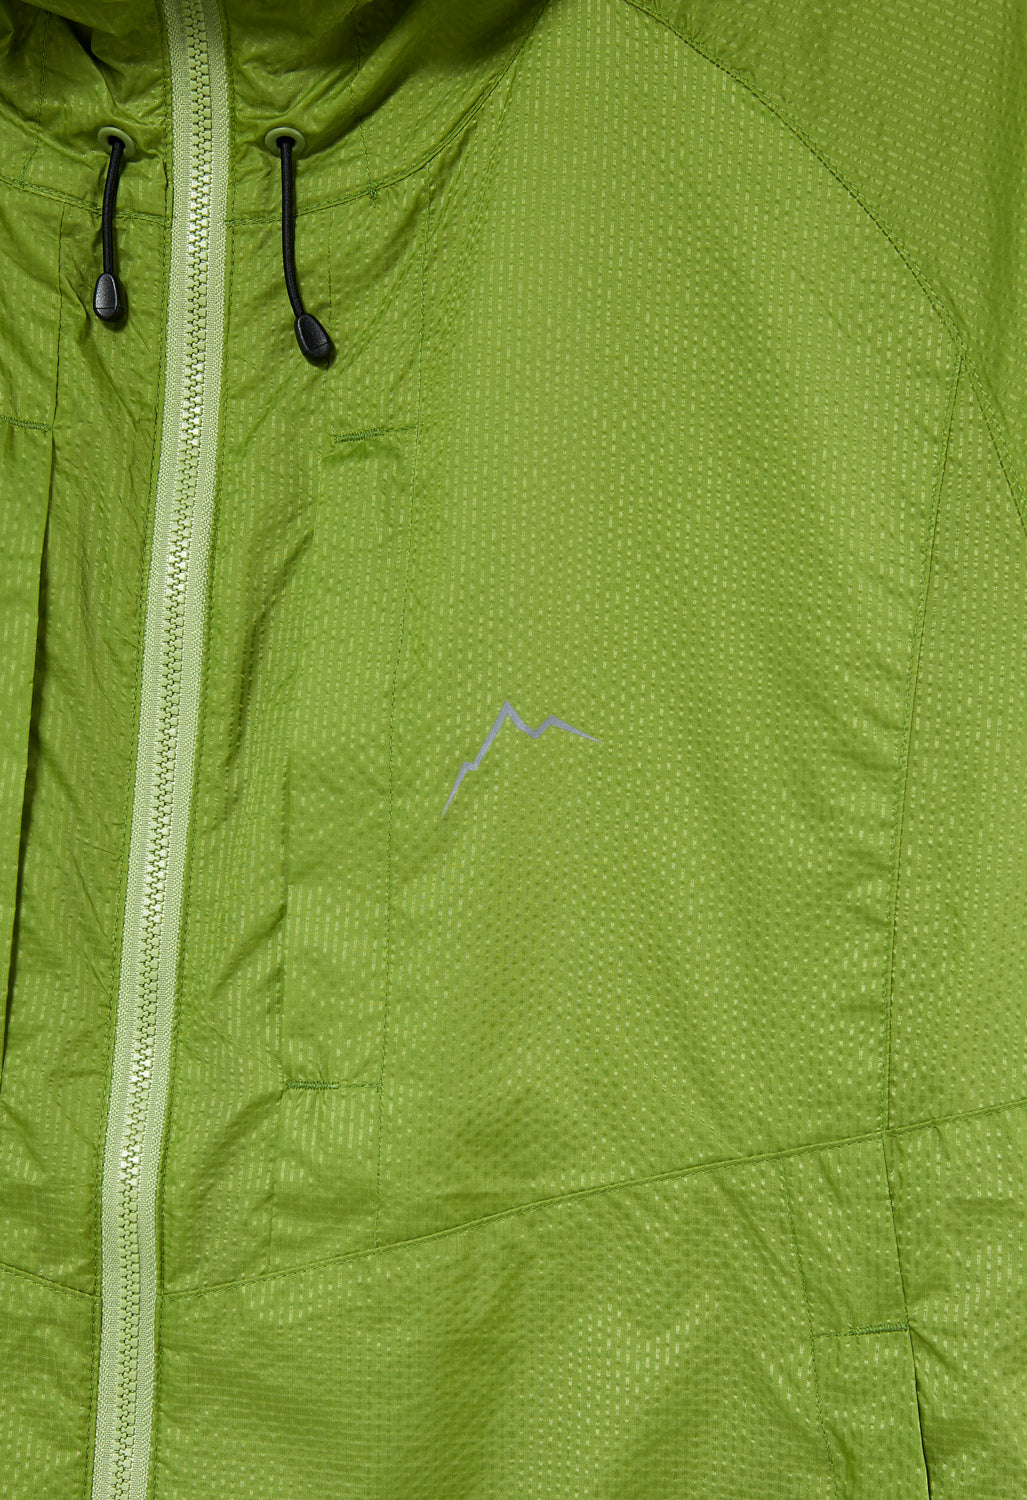 CAYL Ripstop Nylon Jacket - Green